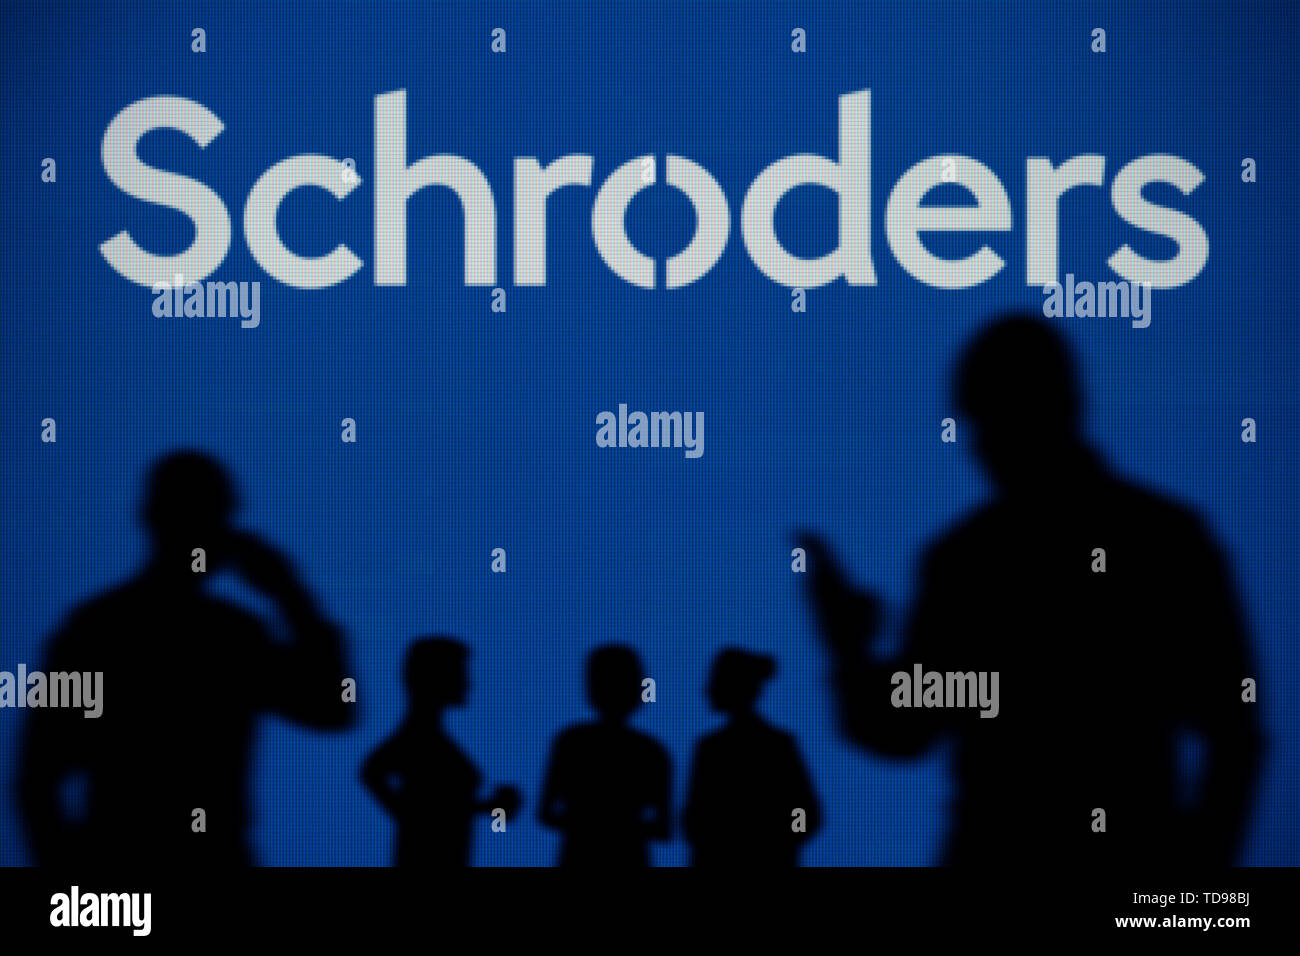 El Schroders logo es visto en una pantalla LED en el fondo mientras una silueta persona utiliza un smartphone en primer plano (uso Editorial solamente) Foto de stock